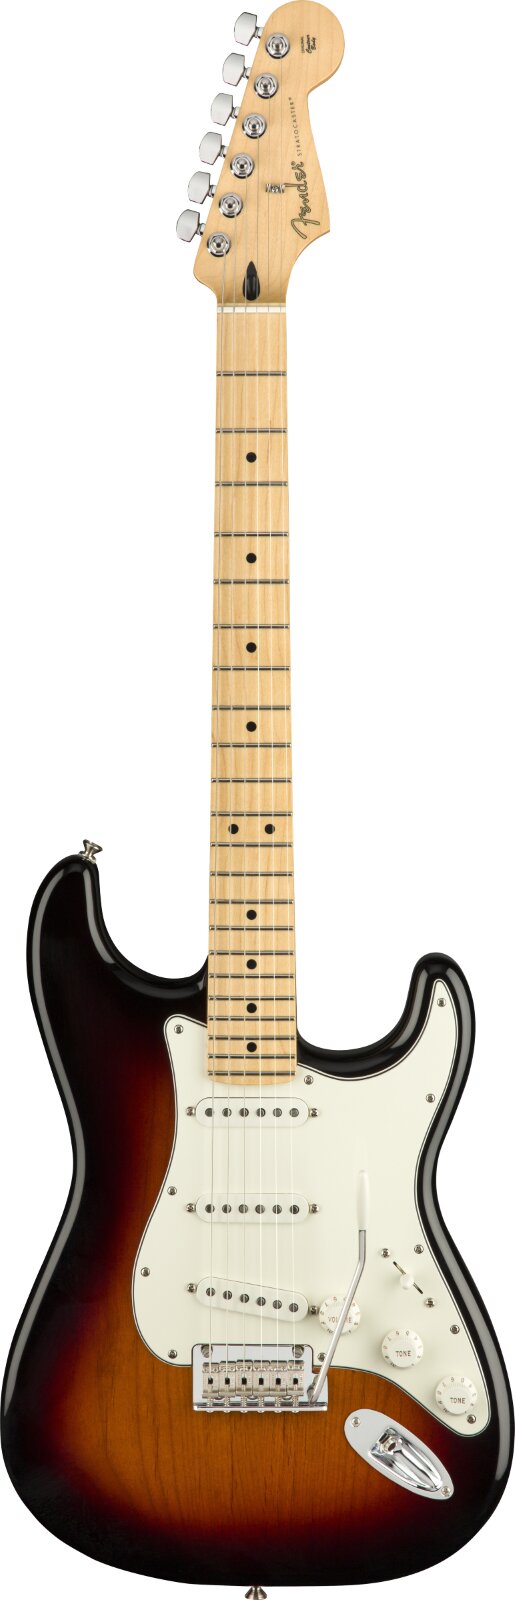 Fender Player Stratocaster Maple Griffbrett 3-Color Sunburst : photo 1